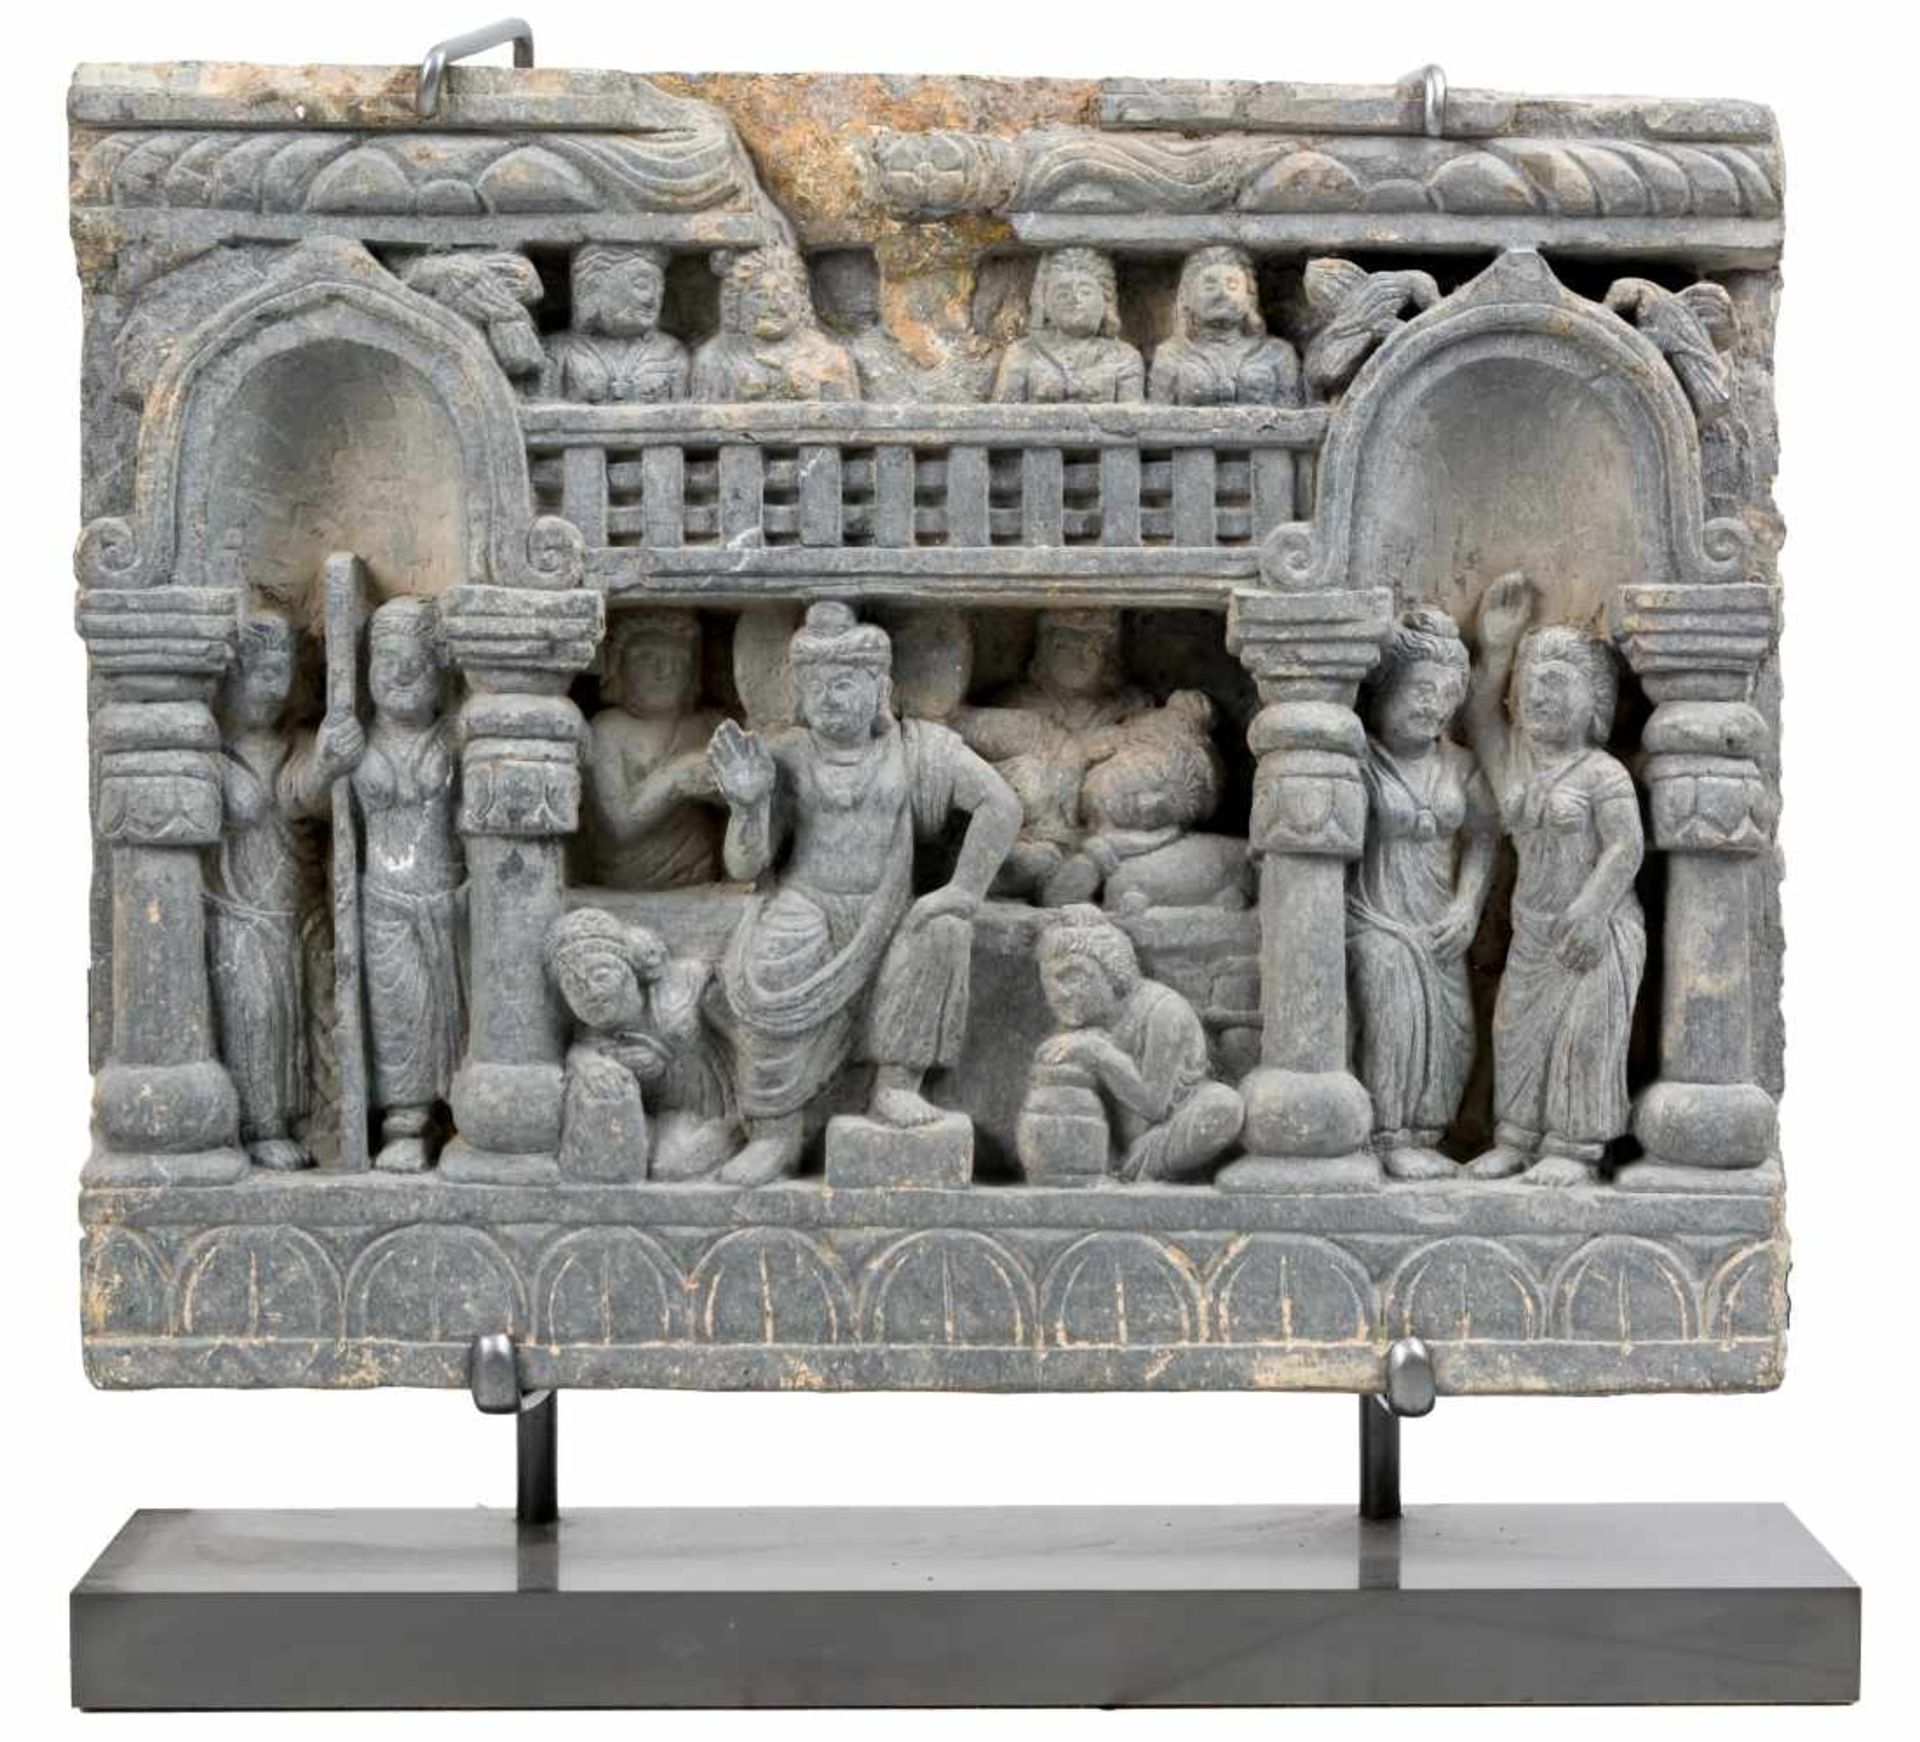 Gandhara Relief aus SandsteinHöhe: 29 cm, Breite: 38 cmProvenienz: Privatsammlung Zürich.A